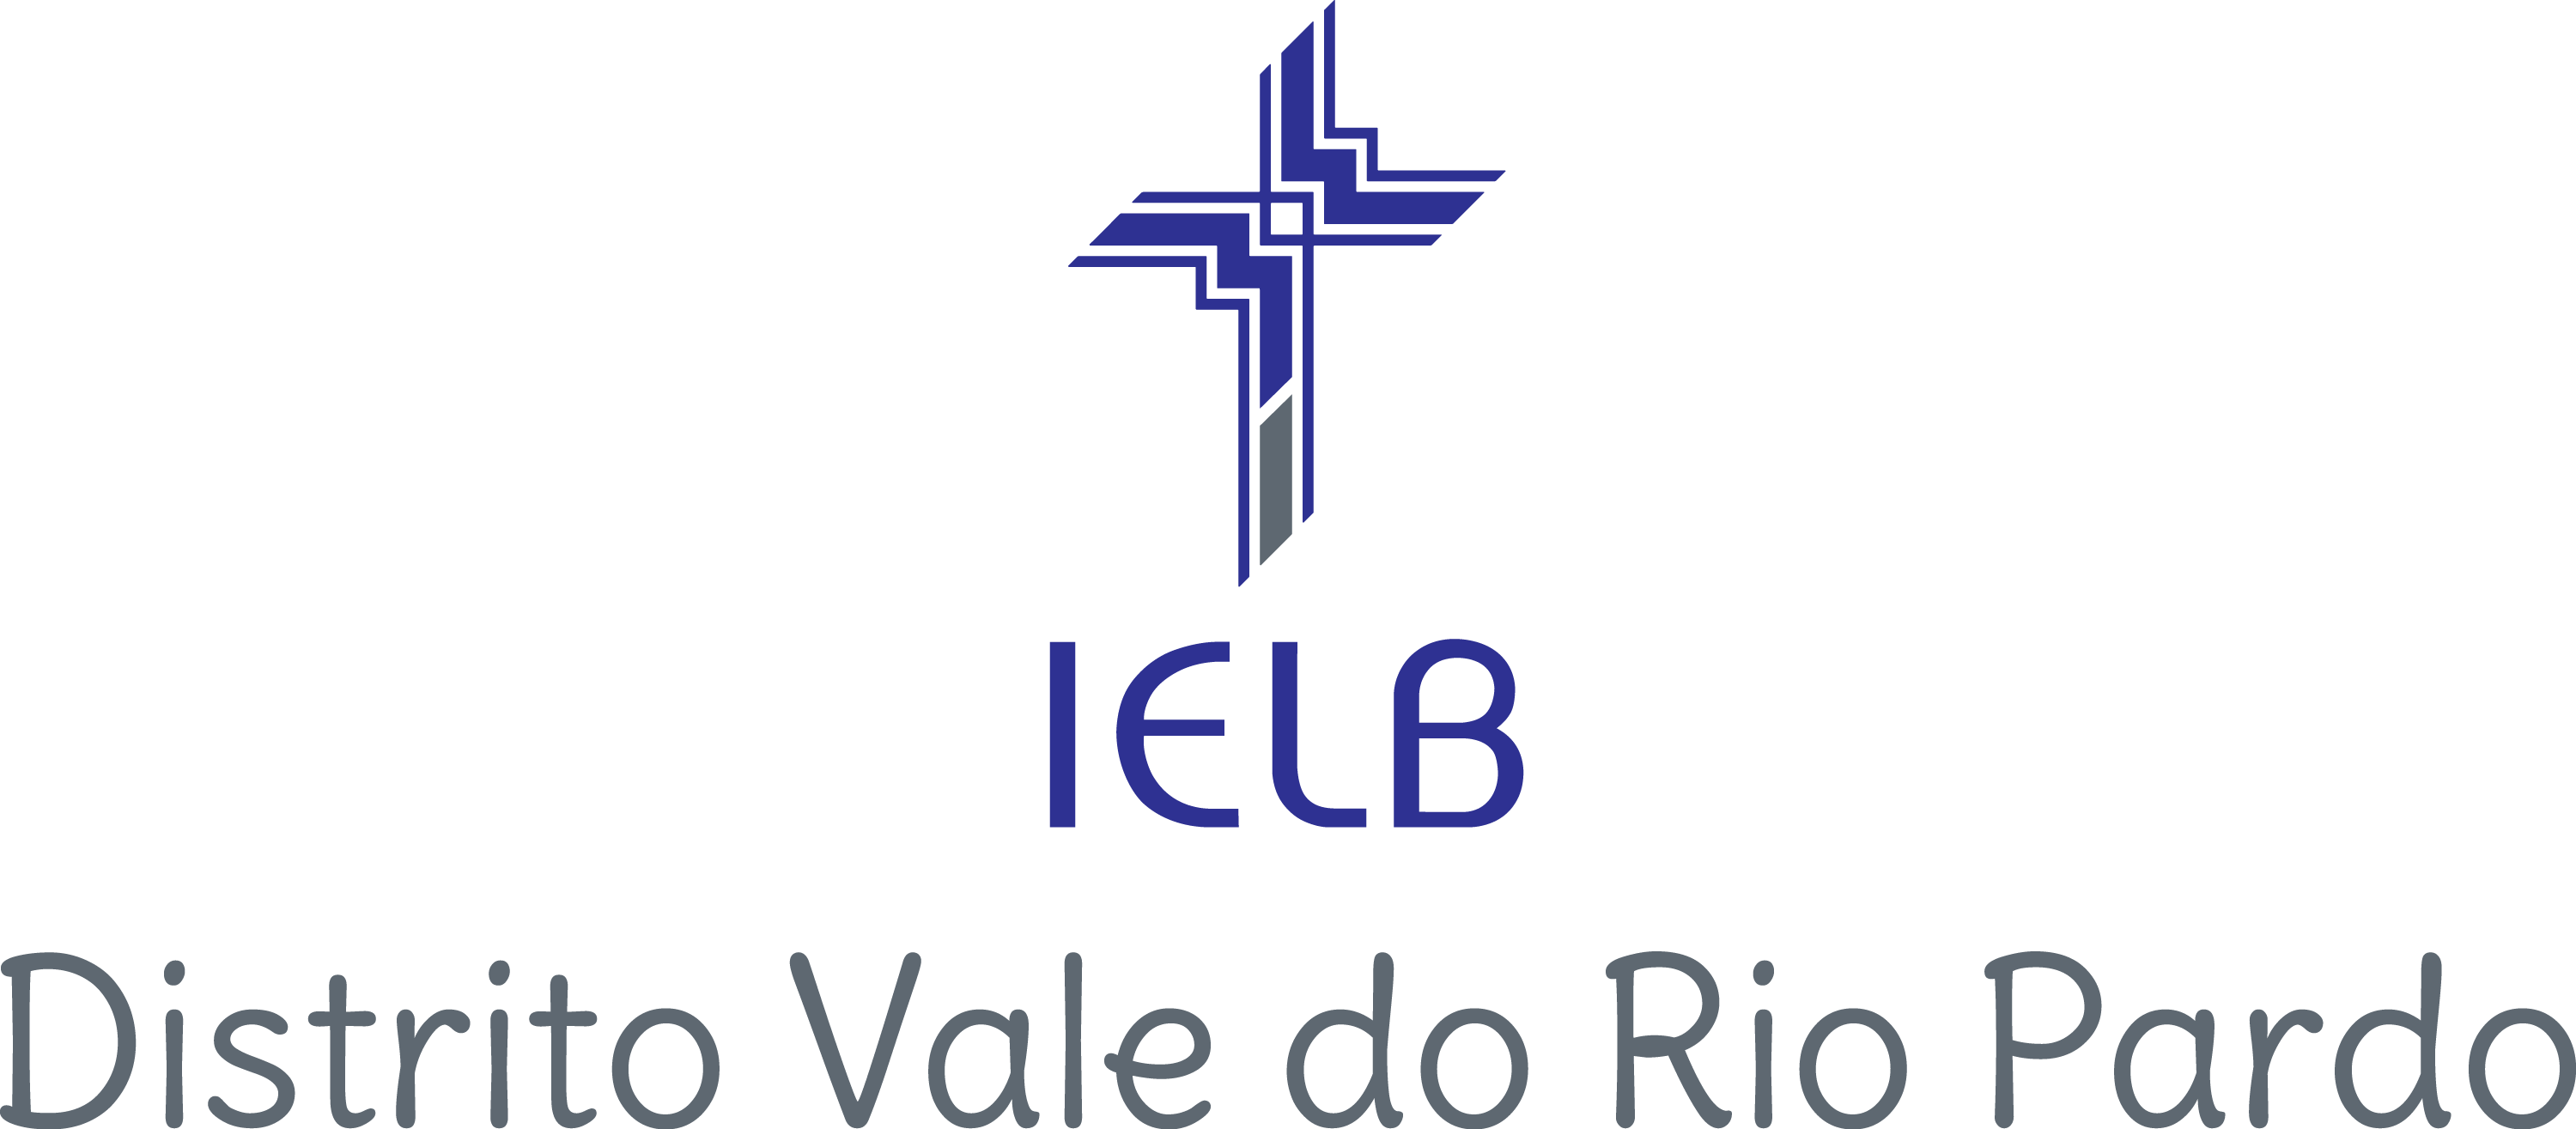 Assinatura visual - Região Sul - Vale do Rio Pardo